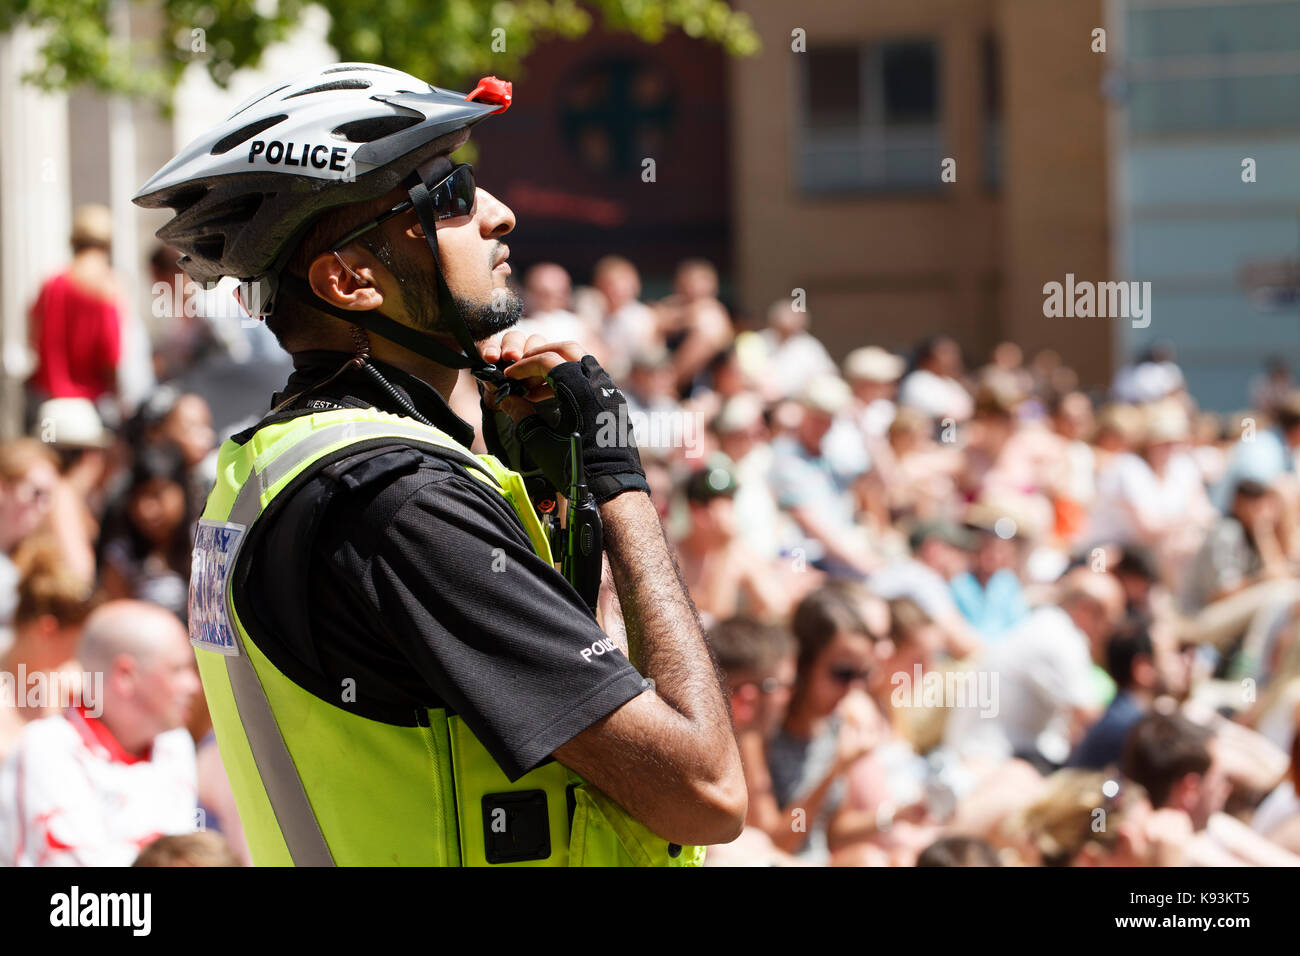 Un policier britannique asiatique ajuste son casque de vélo pédale devant une grande foule a un événement dans le centre de Birmingham, UK Banque D'Images